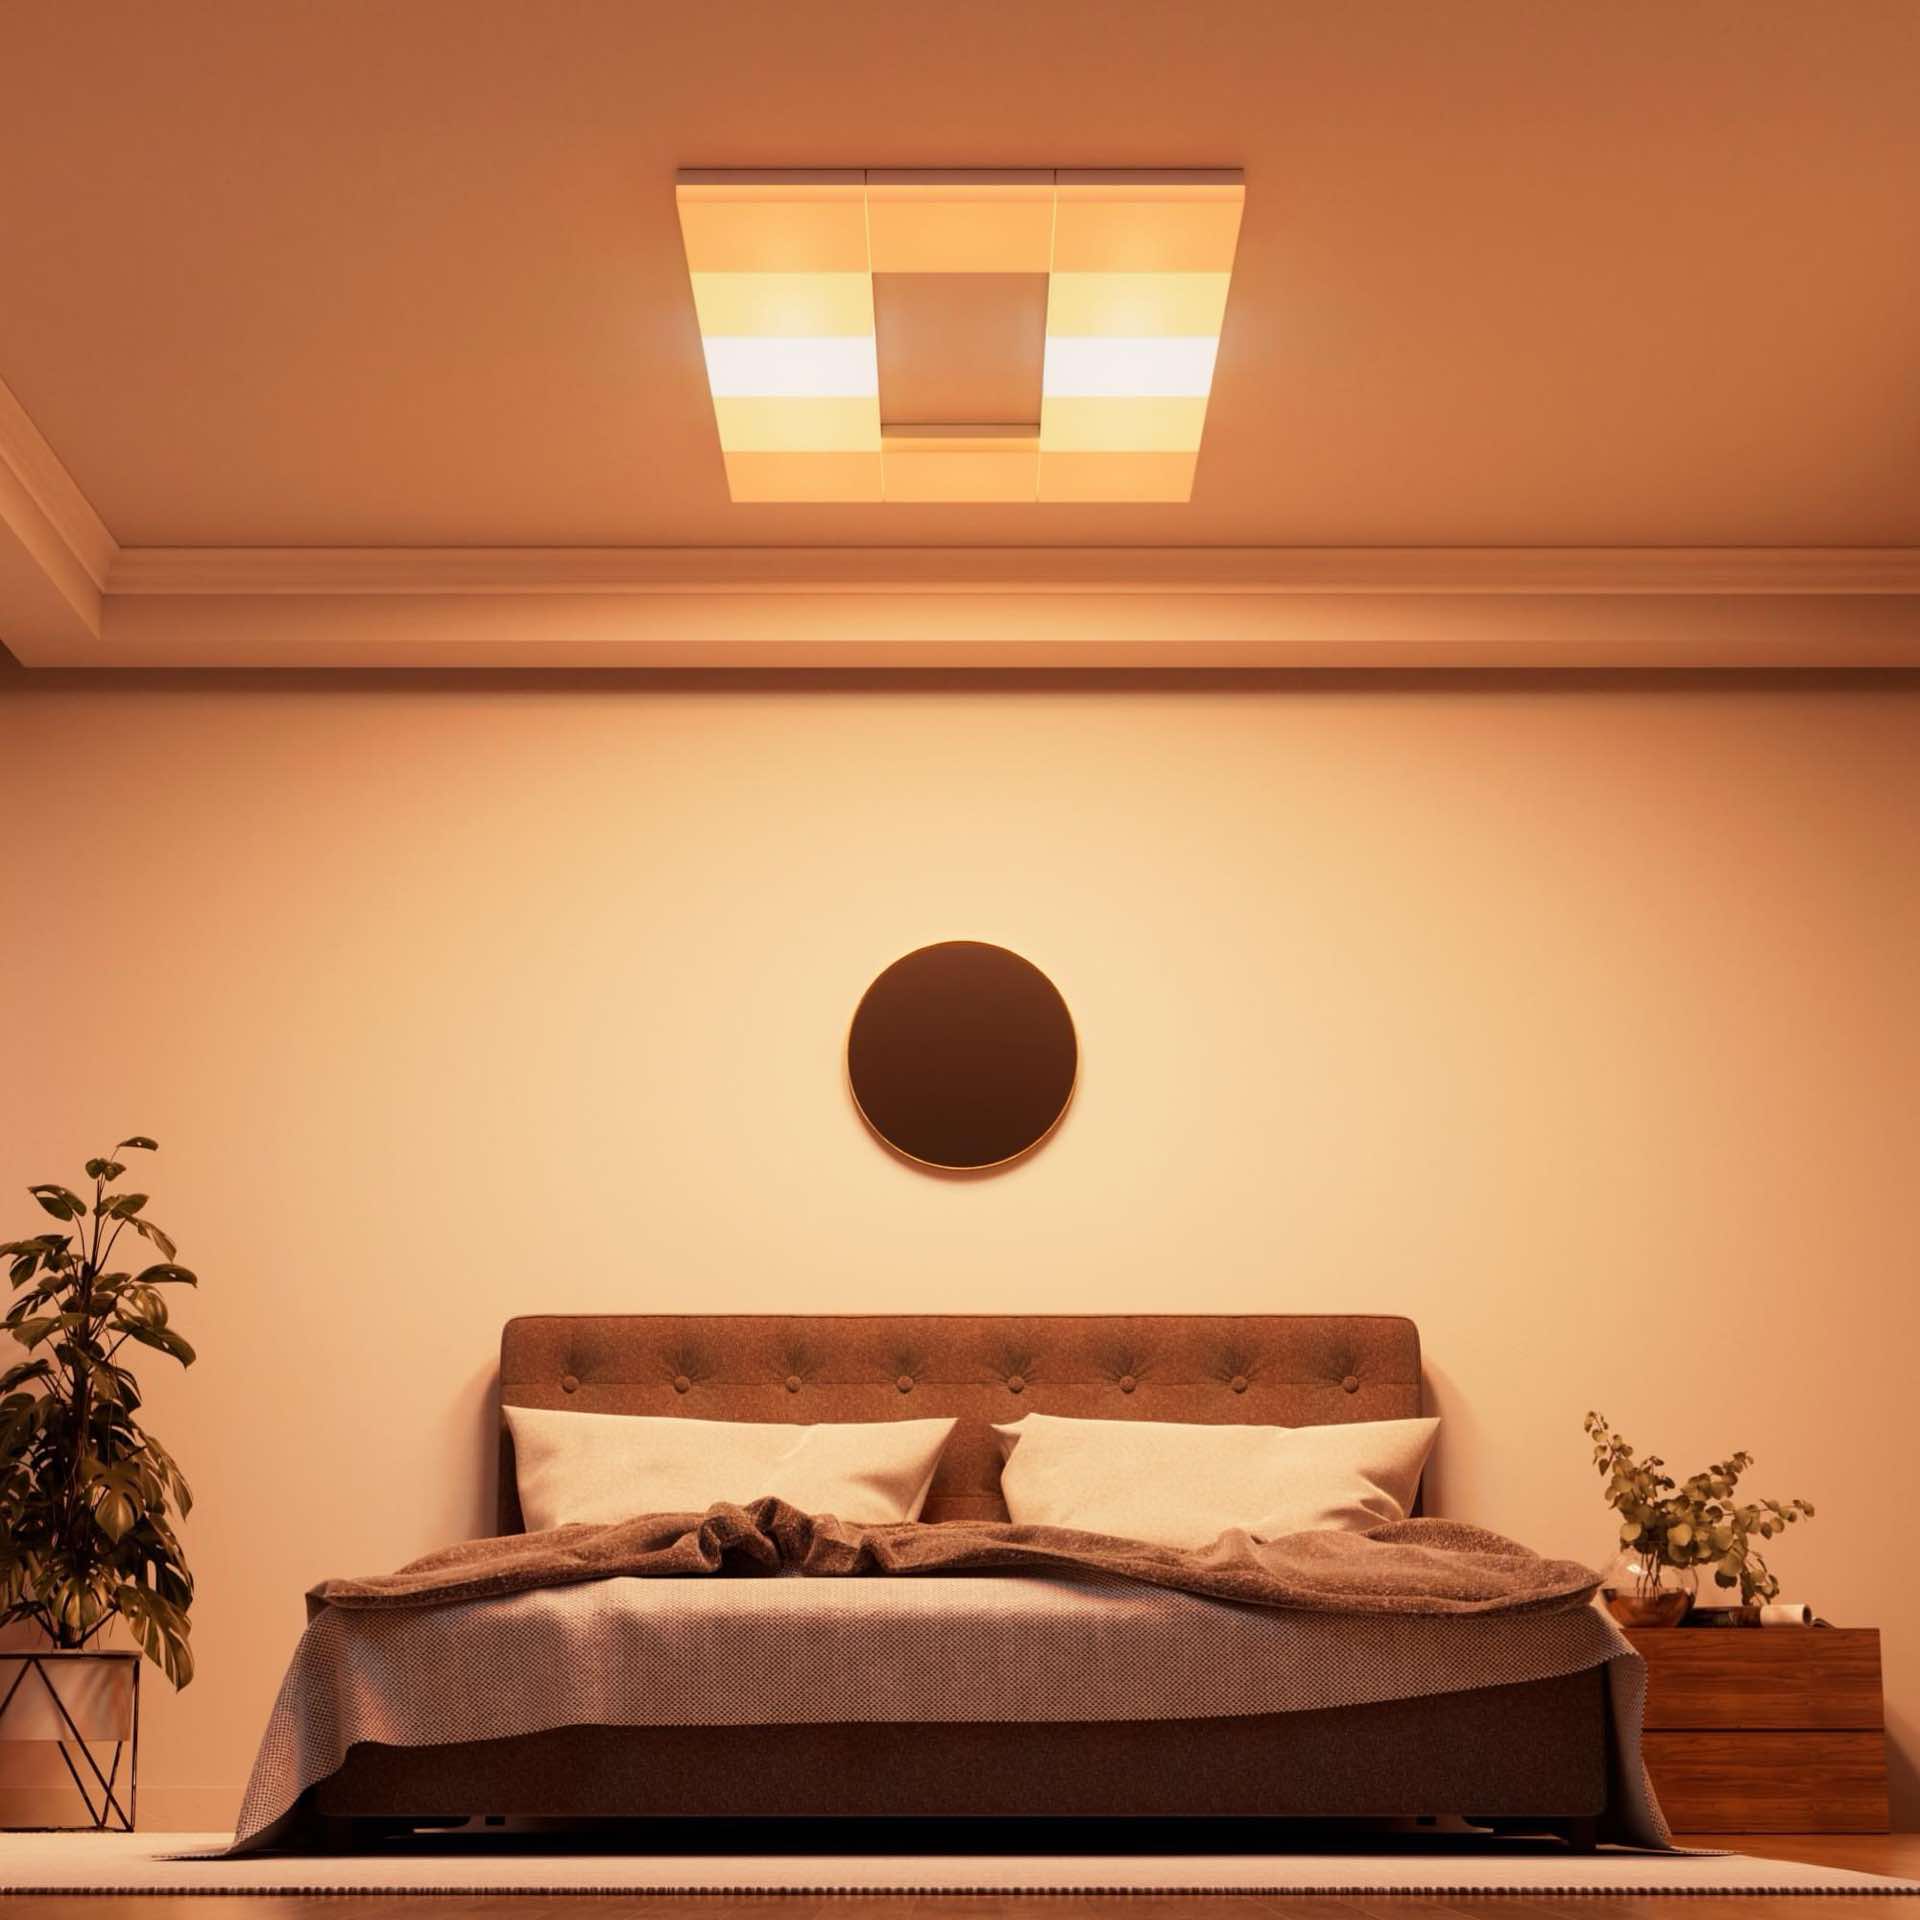 nanoleaf-skylight-smart-ceiling-light-panels-3